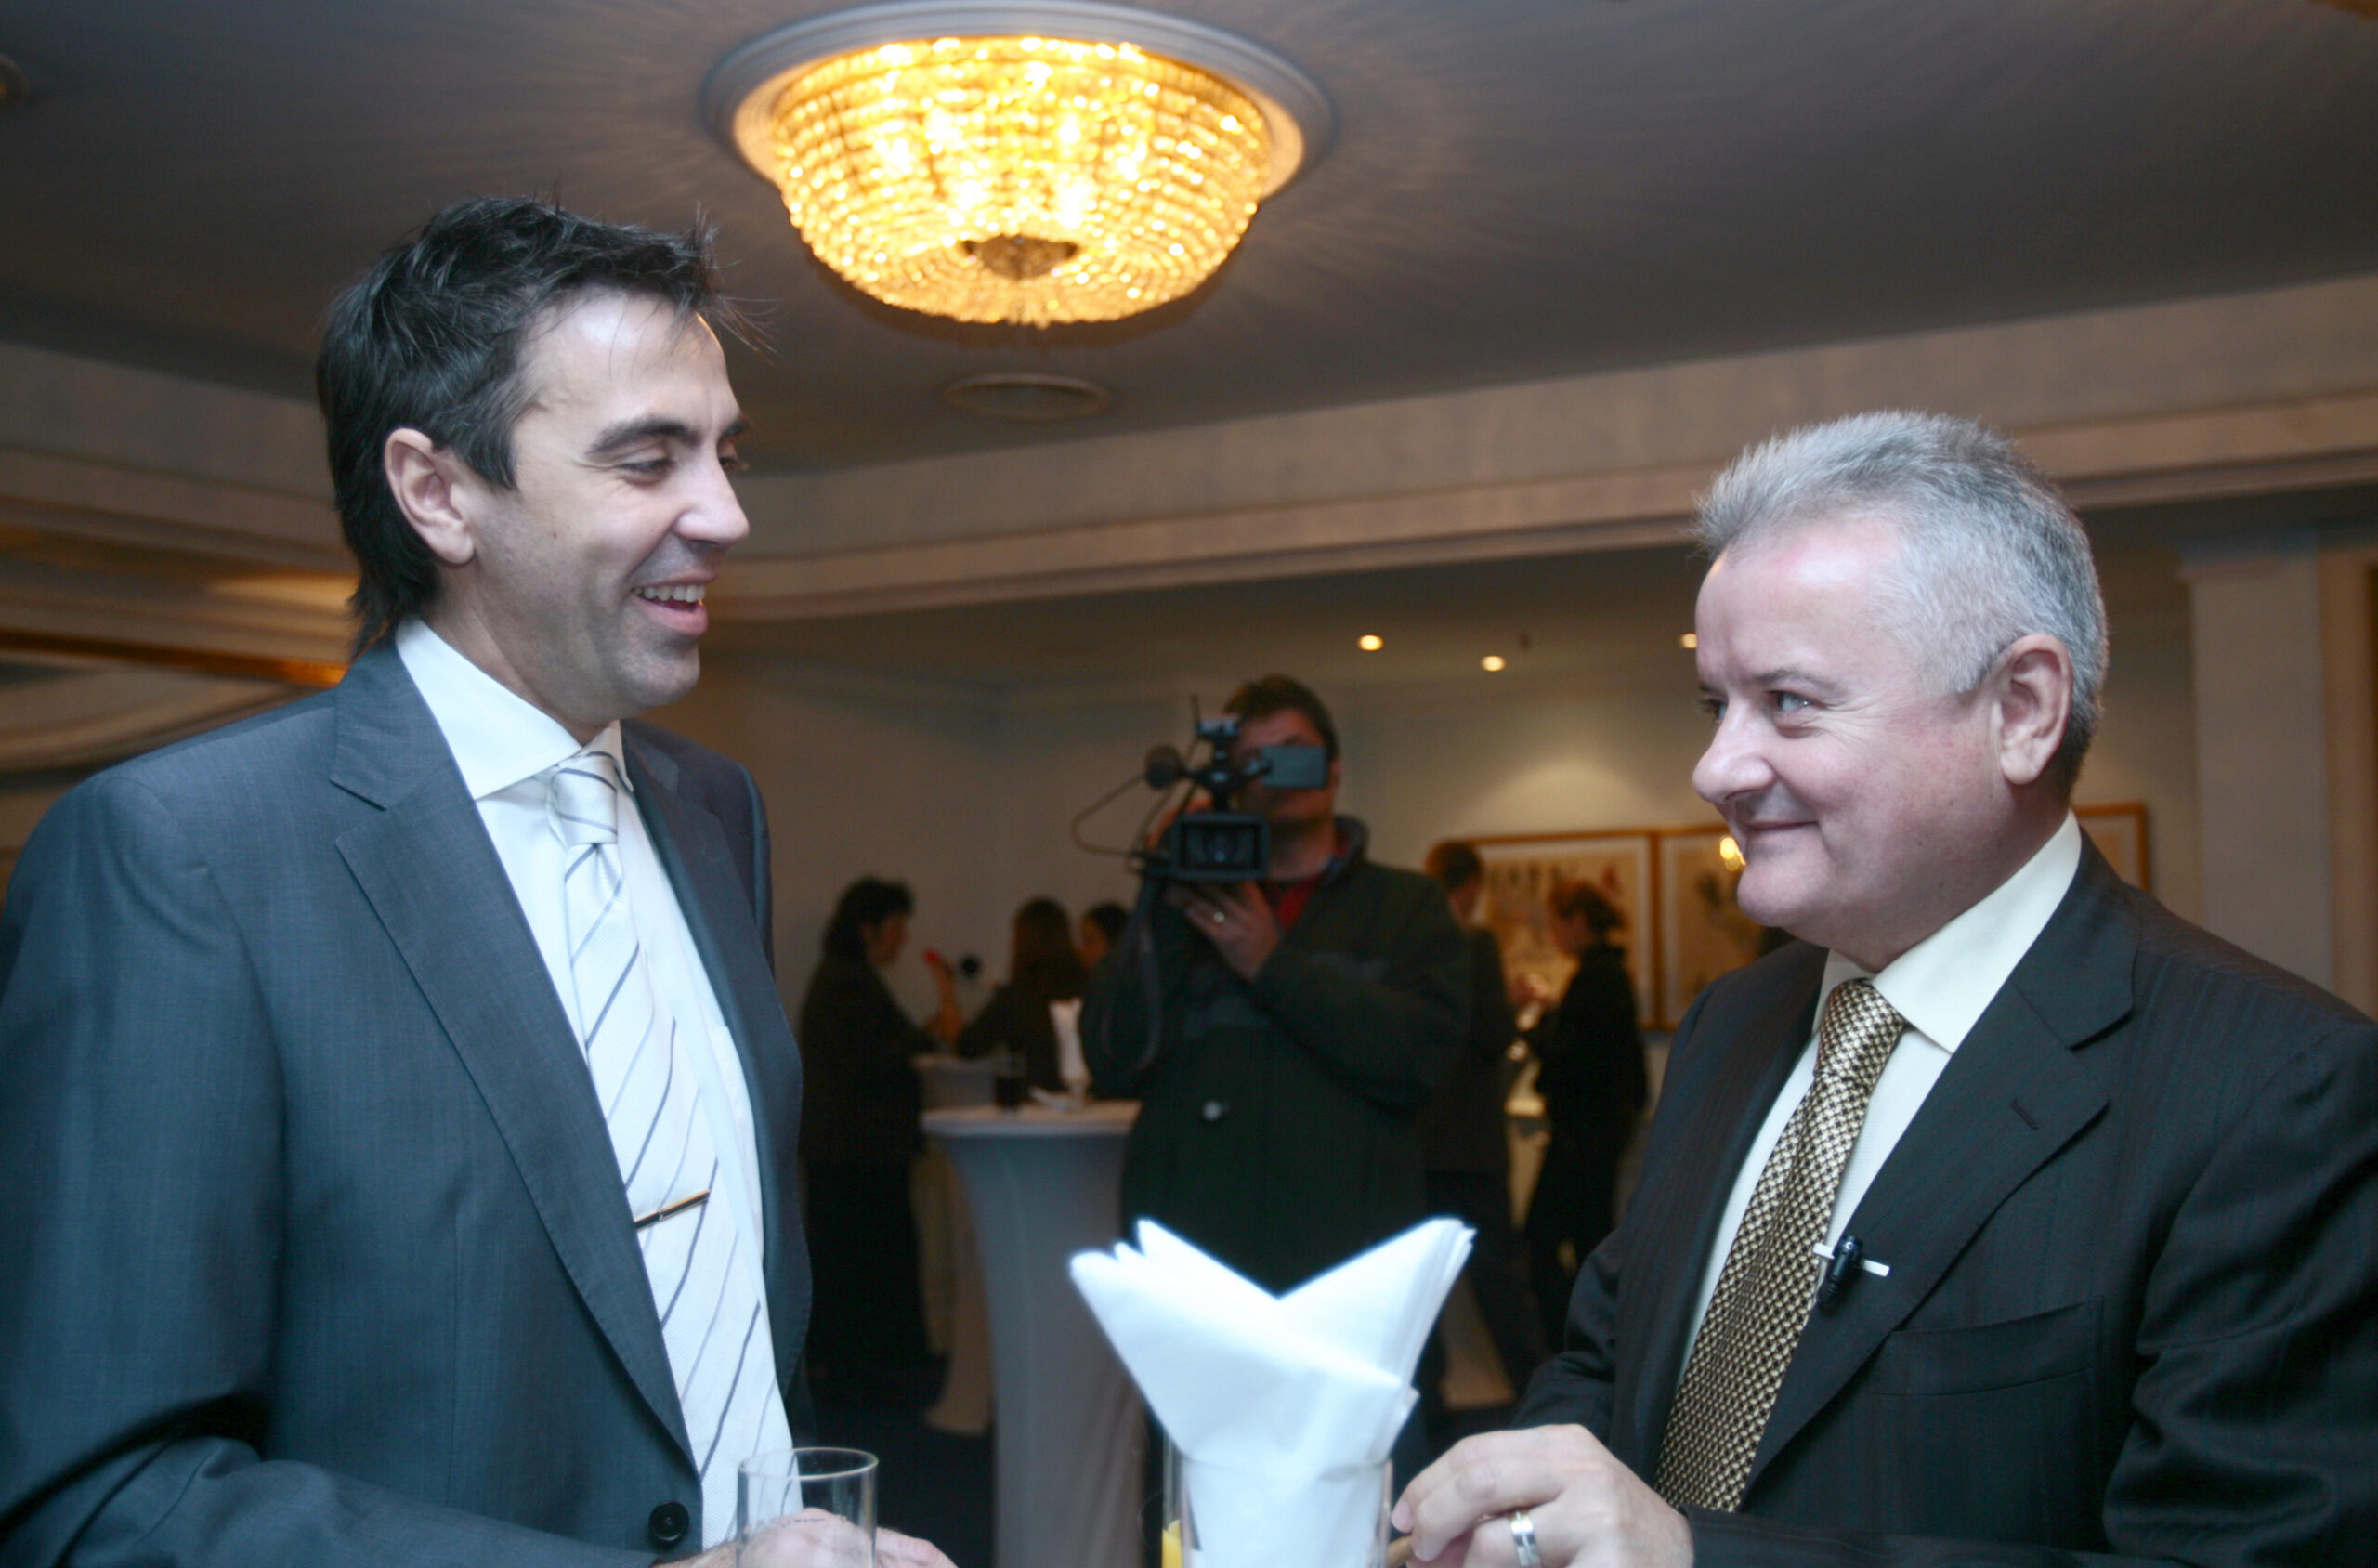 Directorul Eurolines, Dragos Anastasiu (S) discuta cu omul de afaceri, Irinel Columbeanu (D) dupa conferinta de presa organizata de revista Capital cu ocazia lansarii editiei a V-a a "Top 300 cei mai bogati romani", la Hotel Intecontinental, in Bucuresti, marti, 14 noiembrie 2006. ANDREEA BALAUREA / MEDIAFAX FOTO